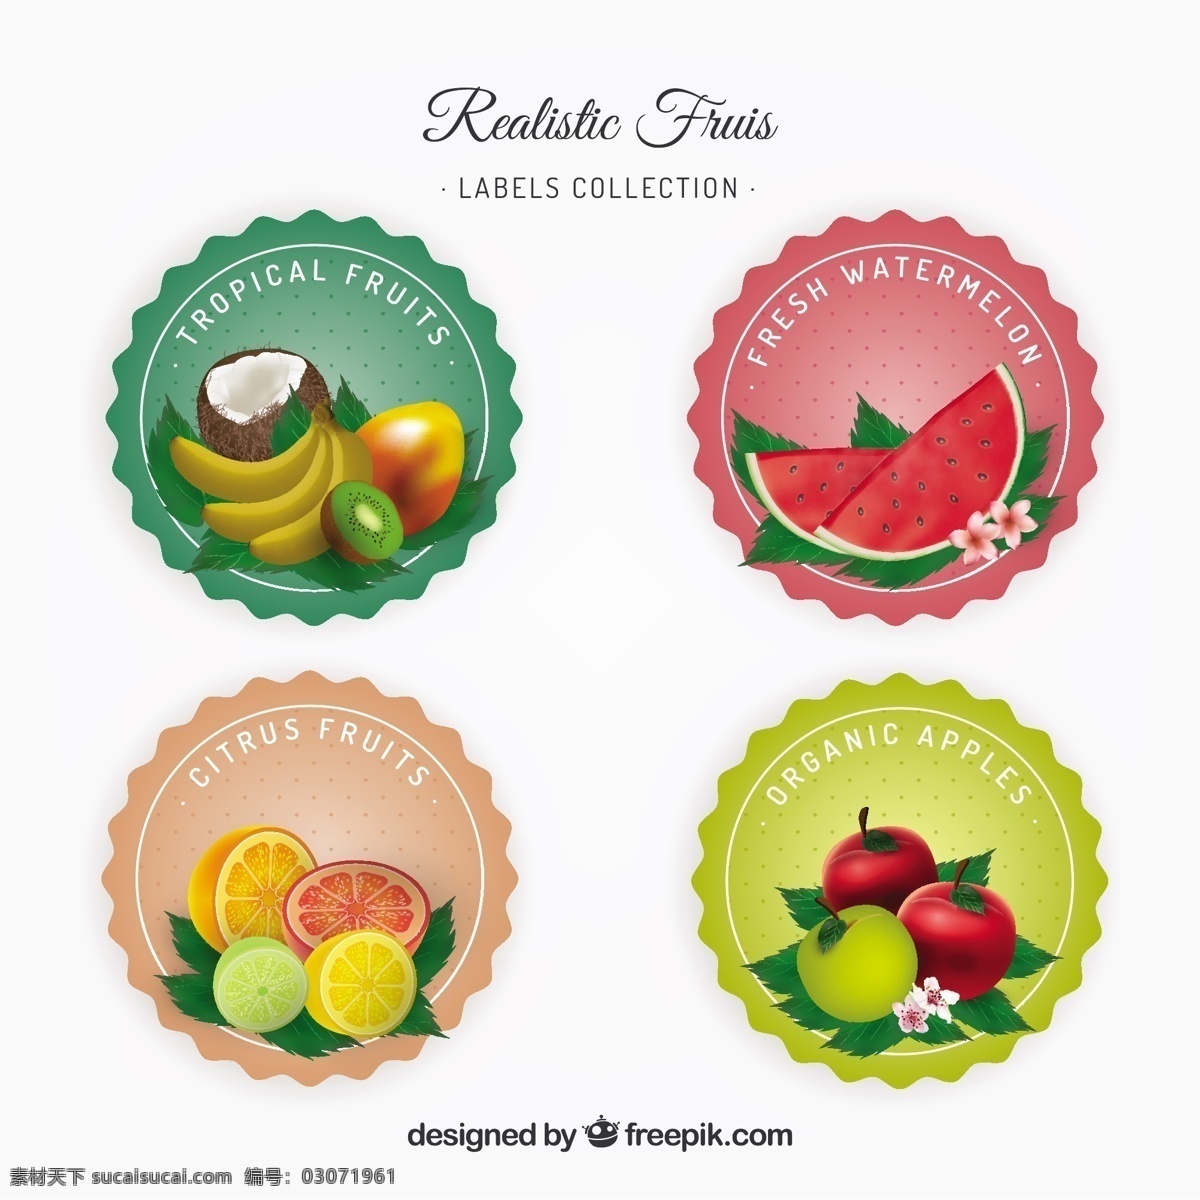 现实 中 水果 贴画 采购产品食品 标签 夏天 颜色 橙色 热带 苹果 圆 香蕉 健康 椰子 吃 健康食品 西瓜 饮食